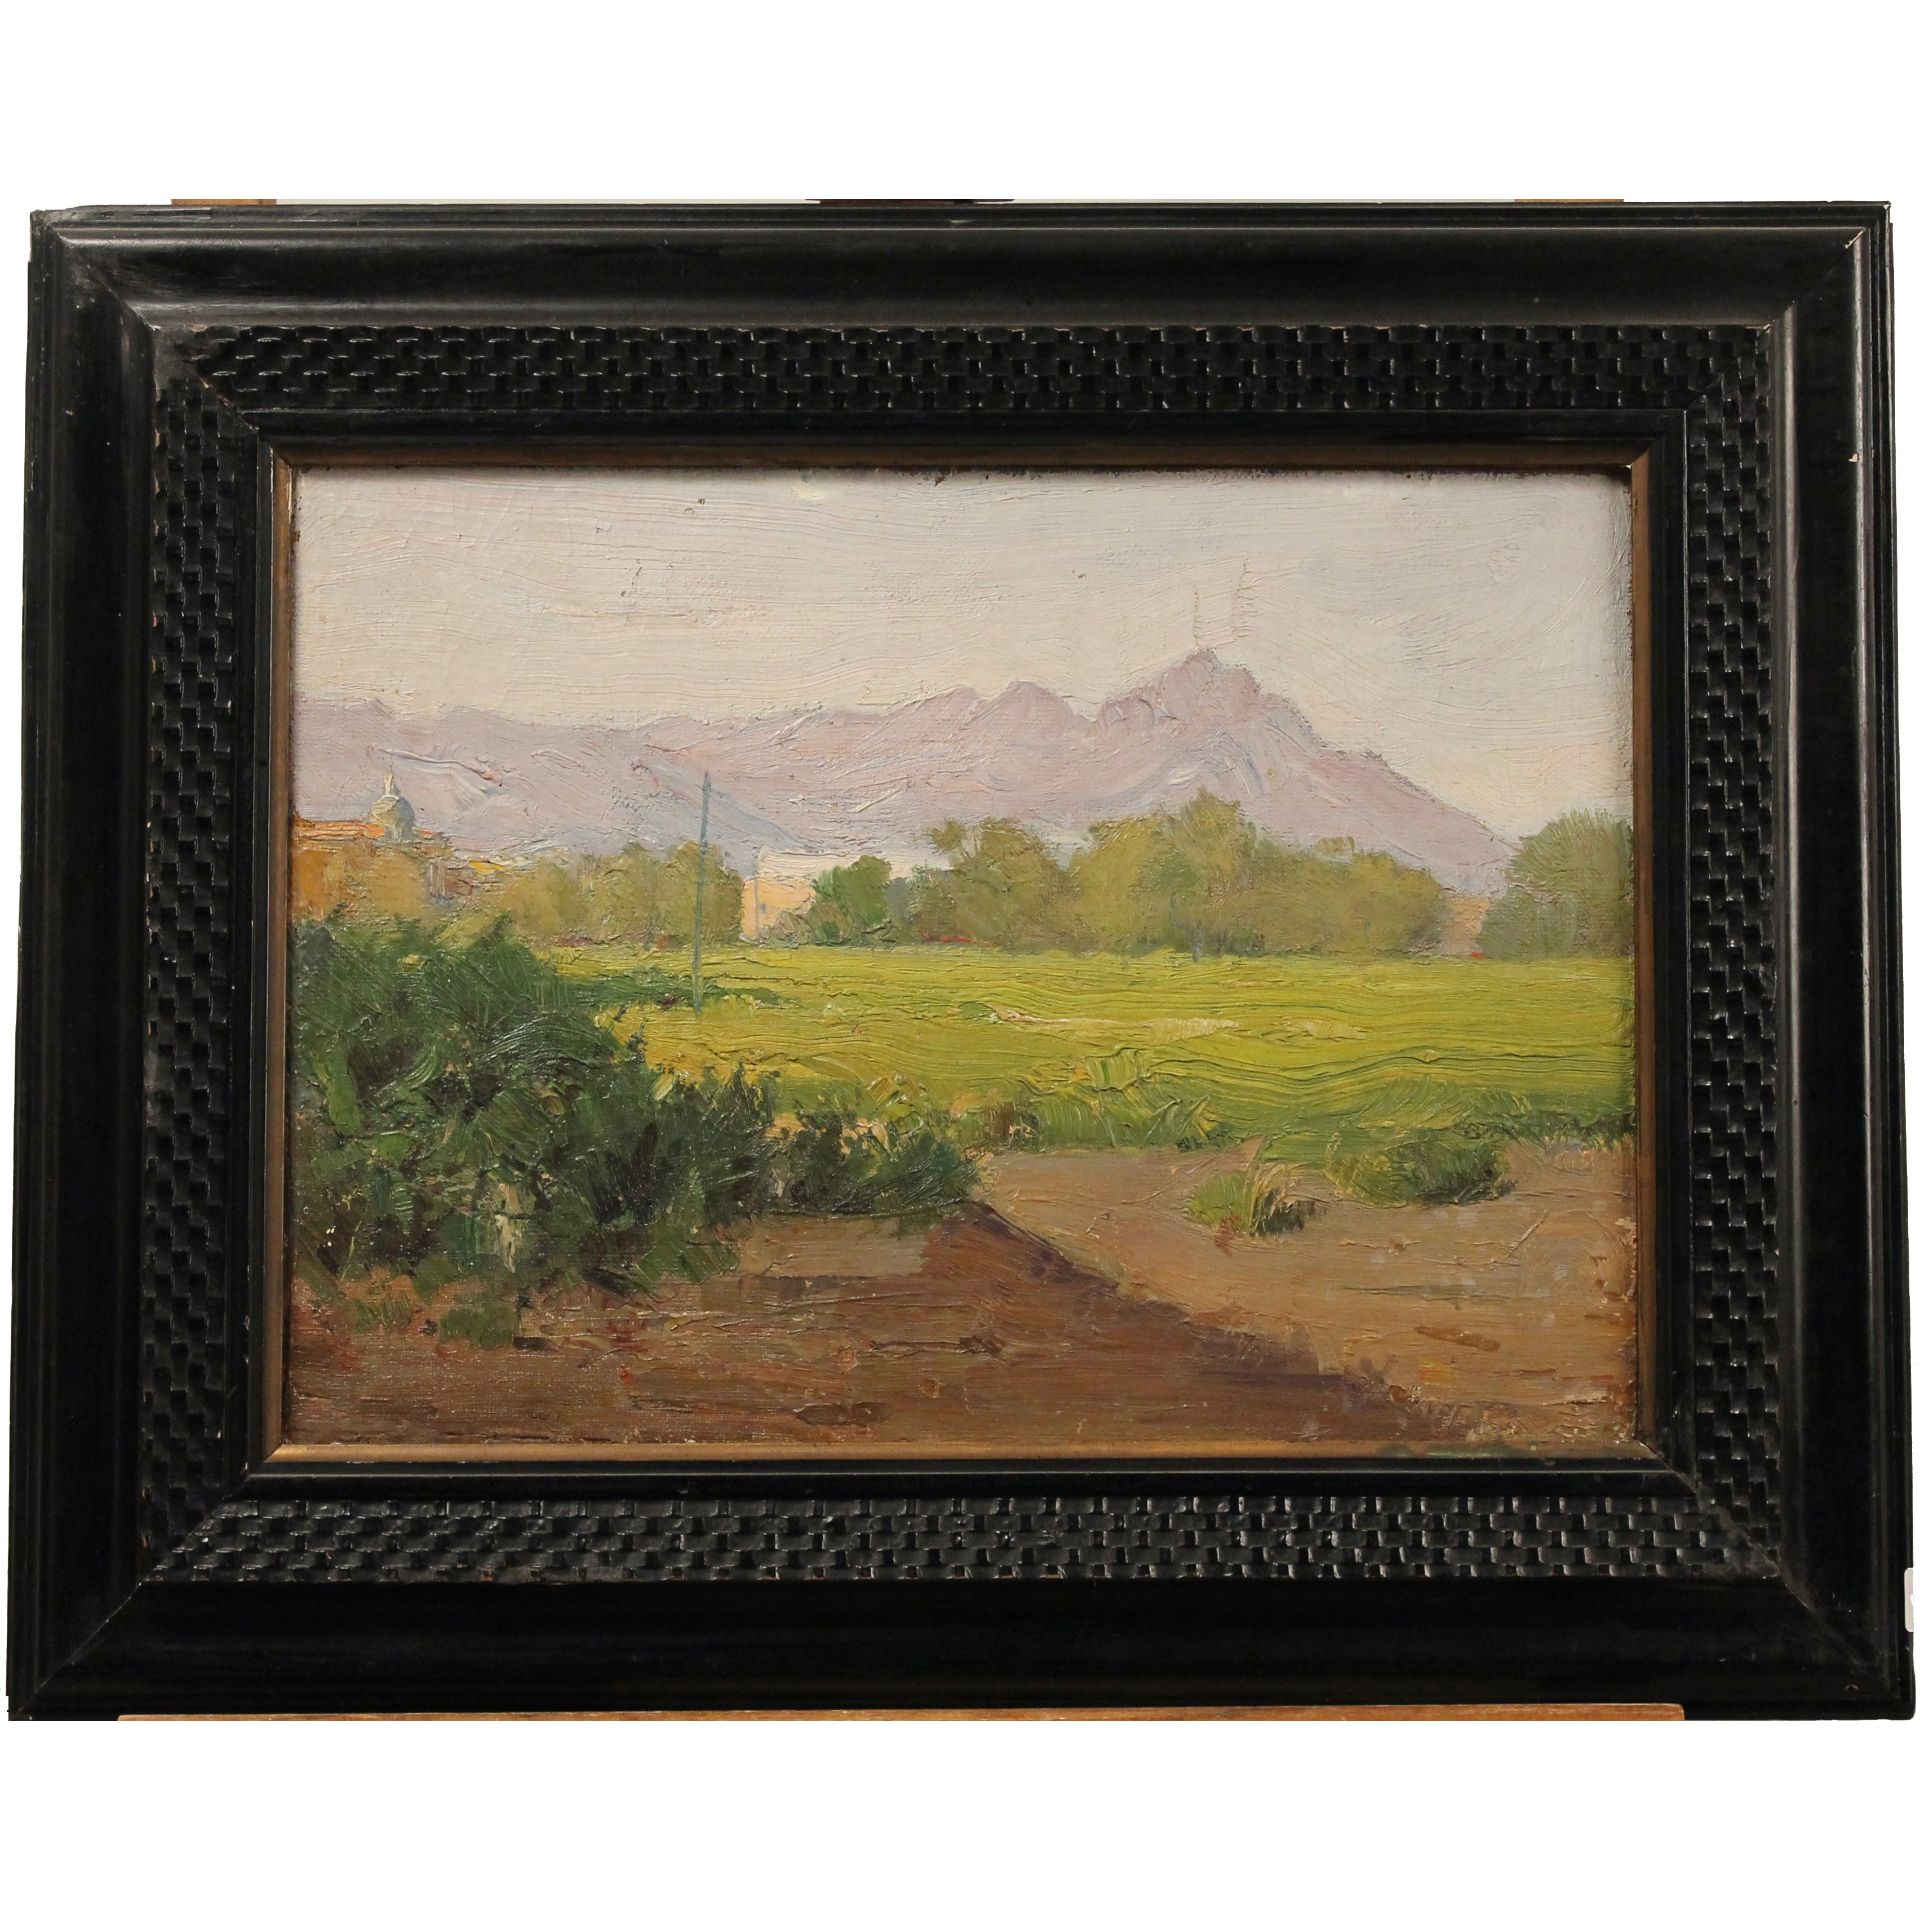 Domenico Quattrociocchi (1872/1941) (attr.) "Paesaggio di campagna" - "Country landscape"